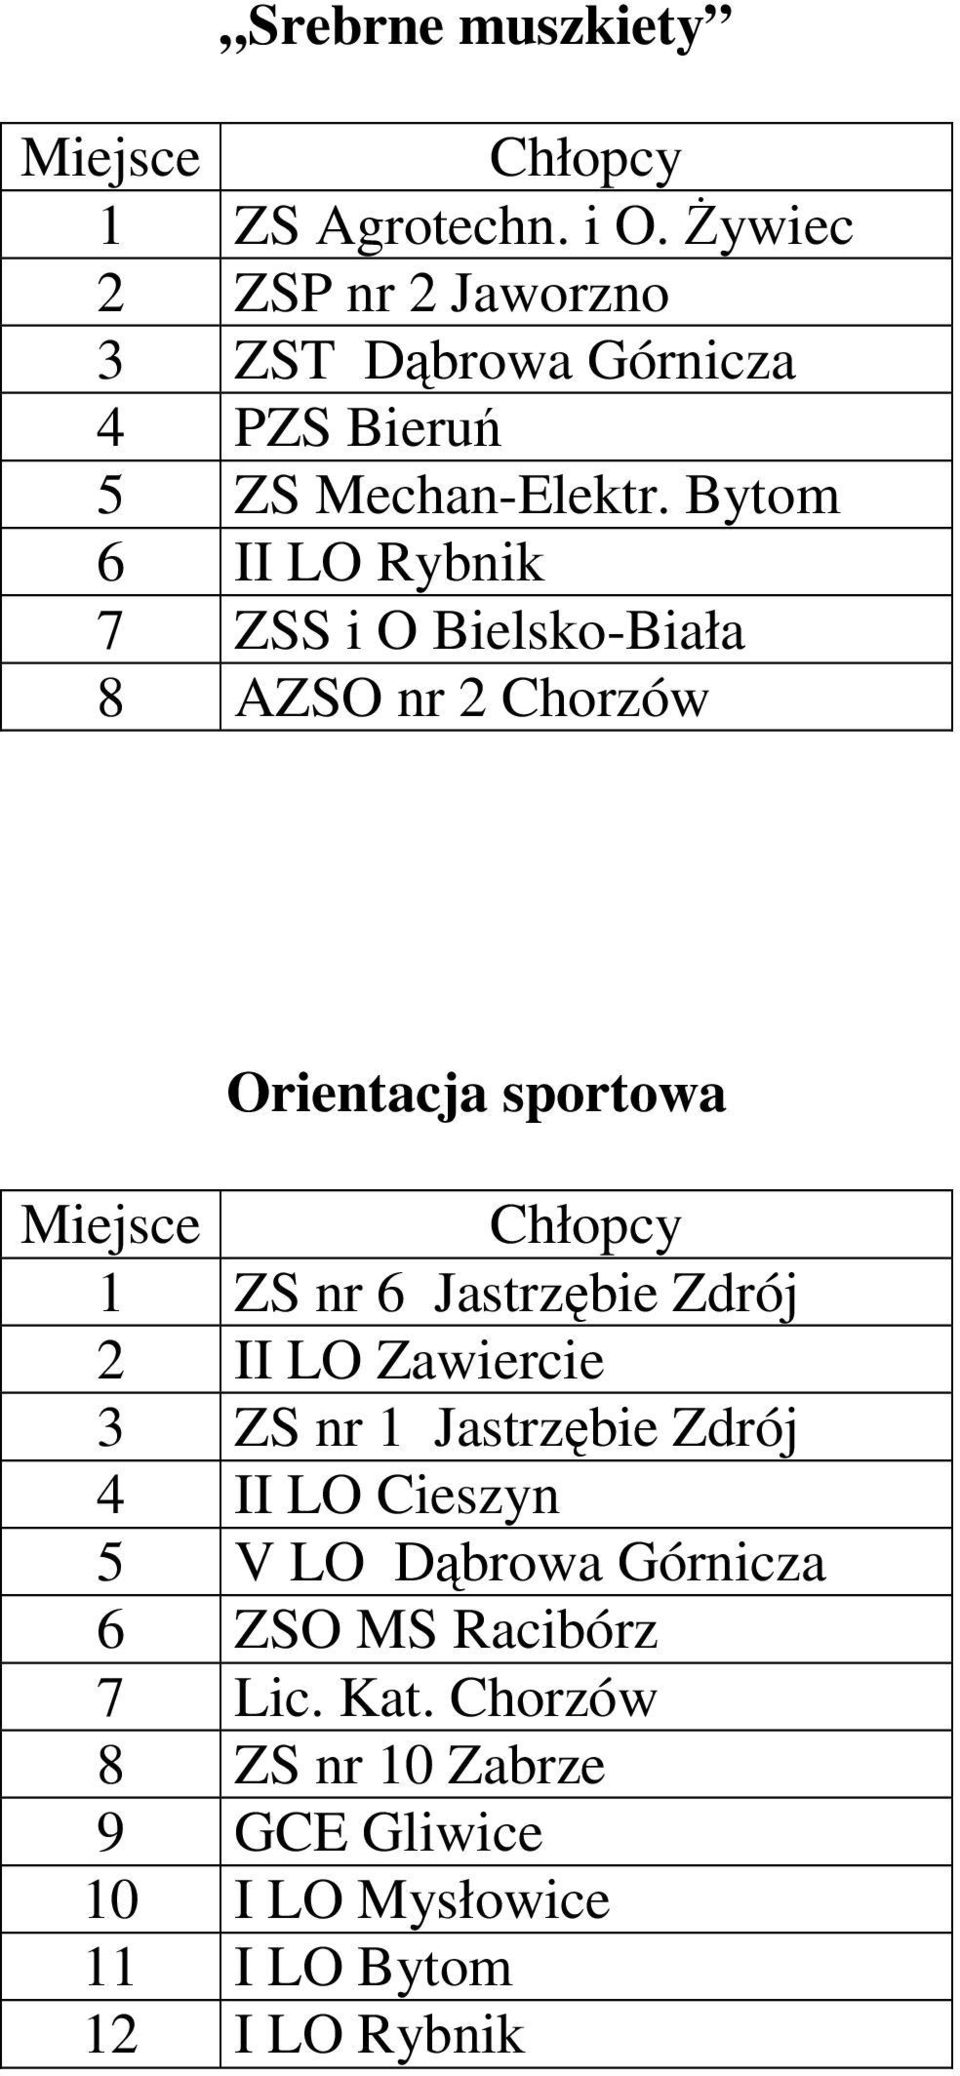 Bytom 6 II LO Rybnik 7 ZSS i O Bielsko-Biała 8 AZSO nr 2 Chorzów Orientacja sportowa 1 ZS nr 6 Jastrzębie